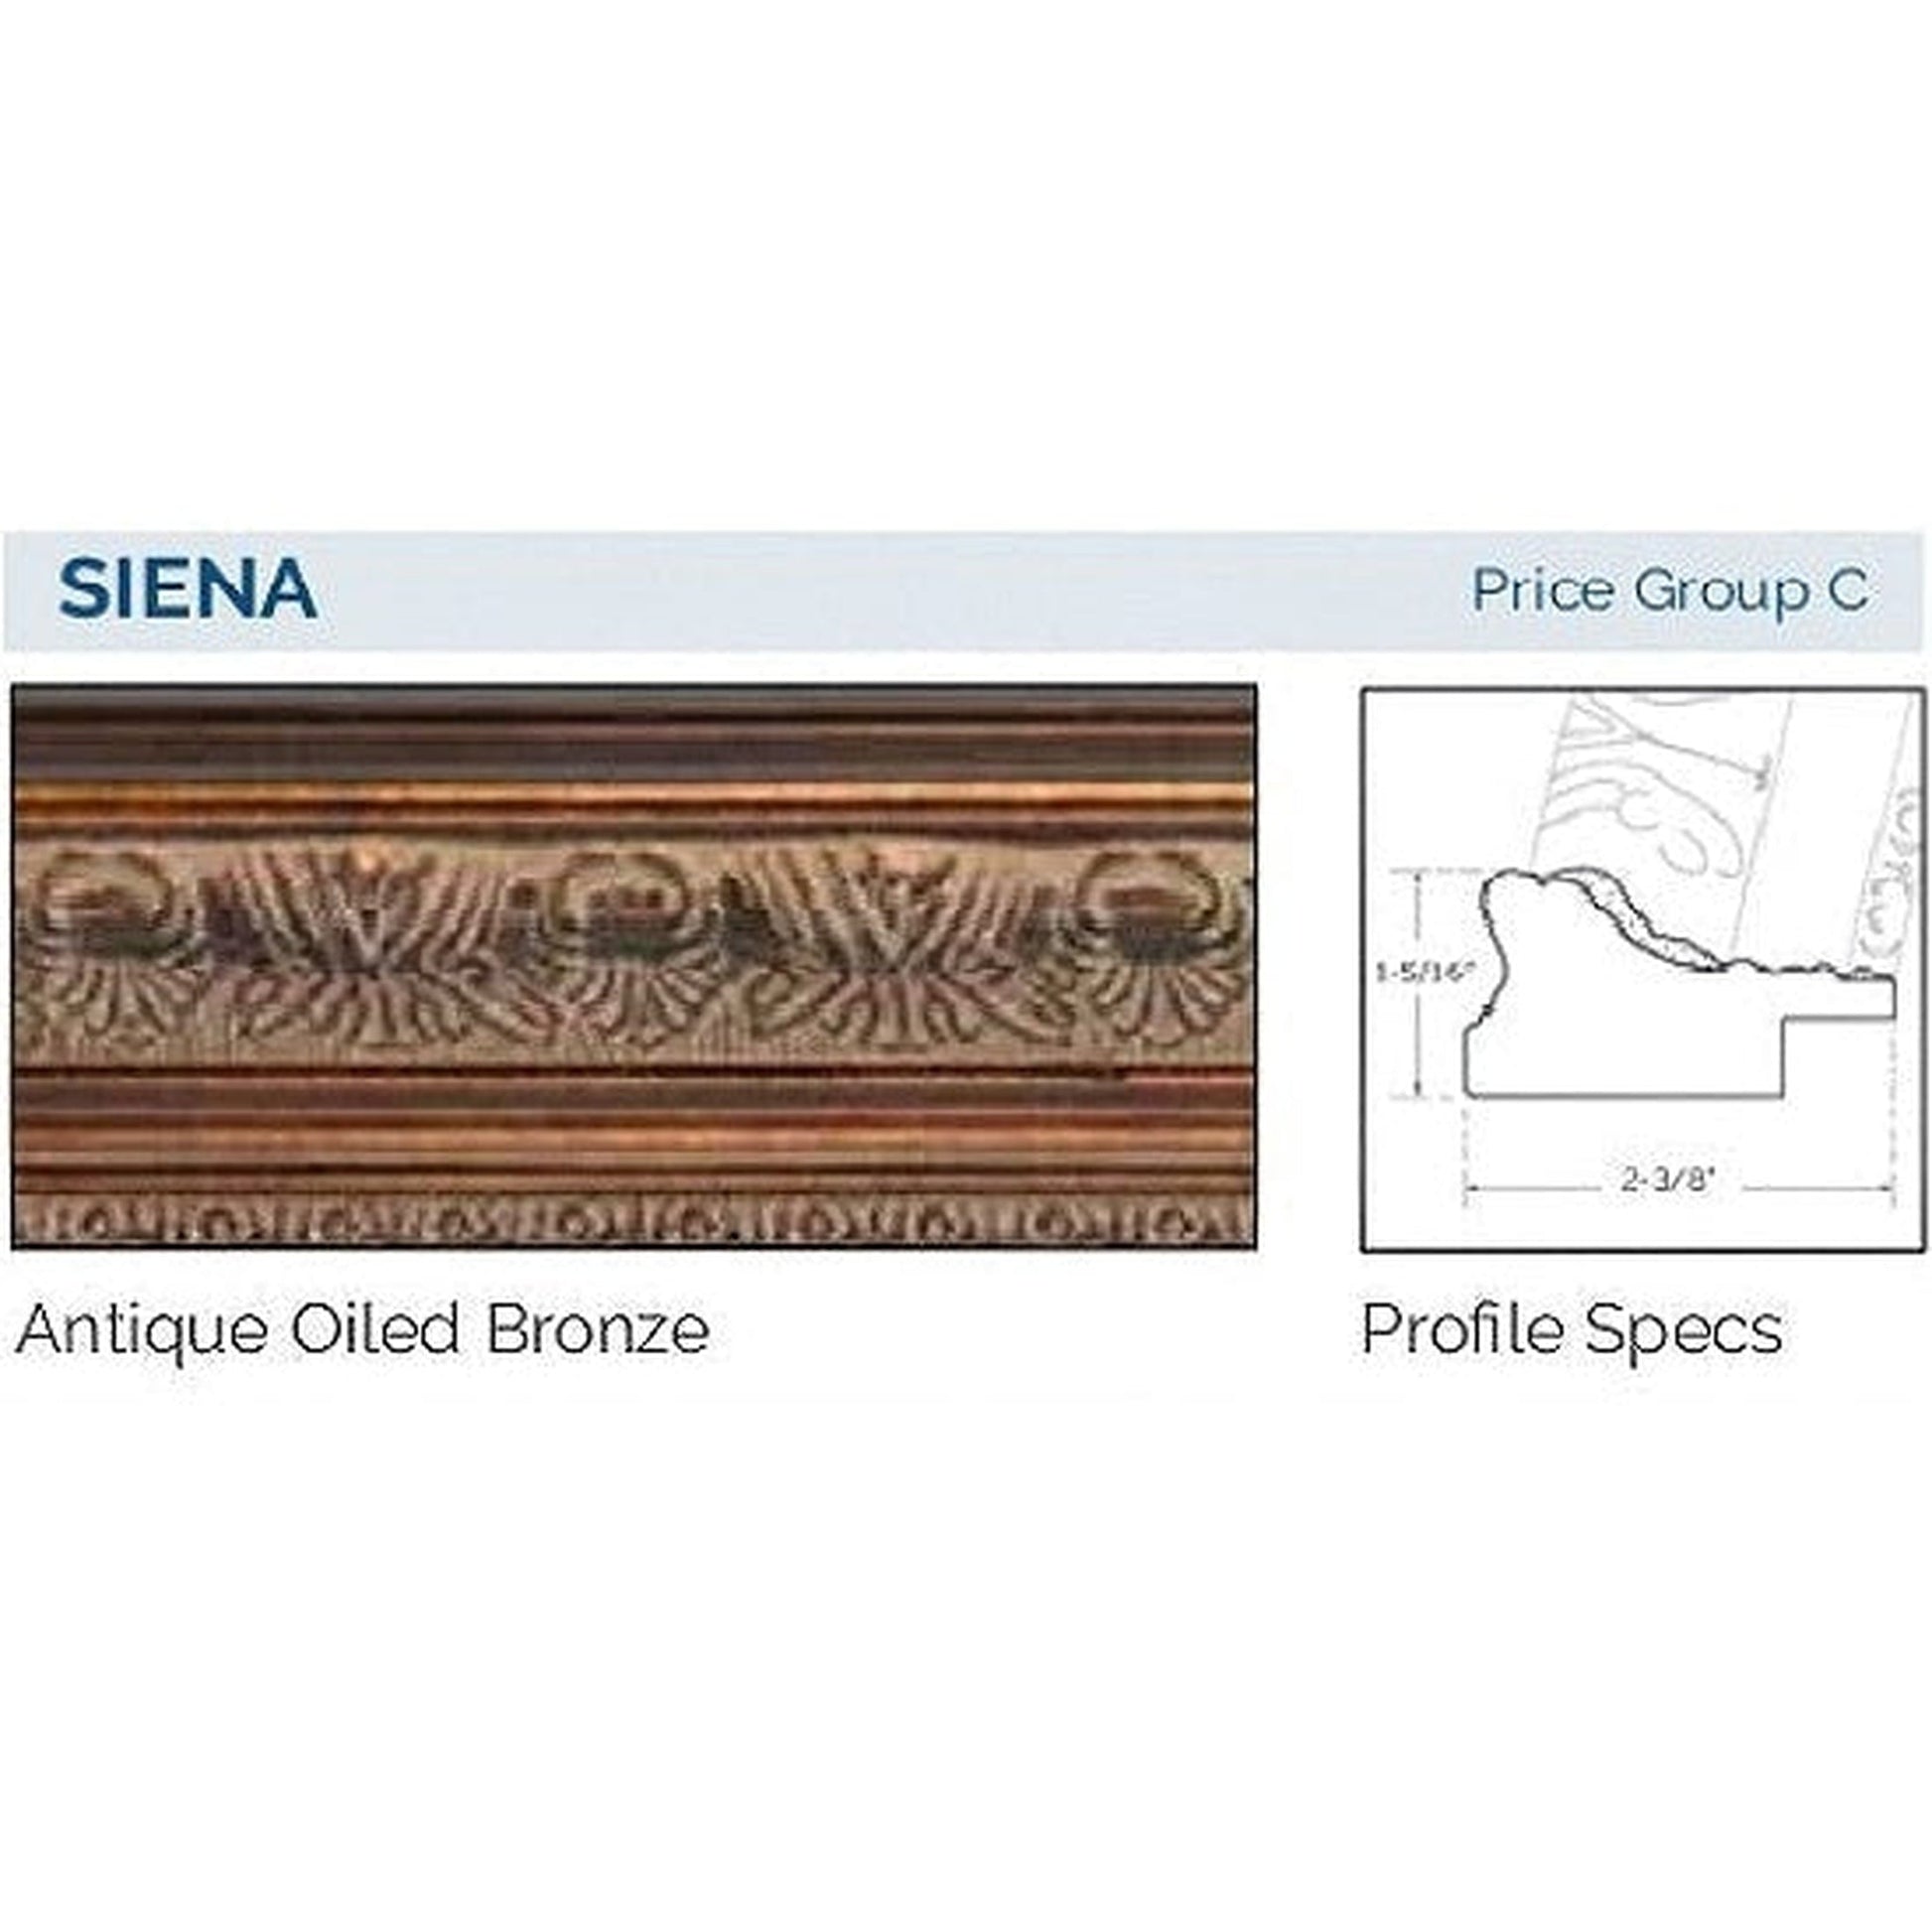 Afina Signature 58" x 30" Siena Antique Oiled Bronze Recessed Four Door Medicine Cabinet With Beveled Edge Mirror